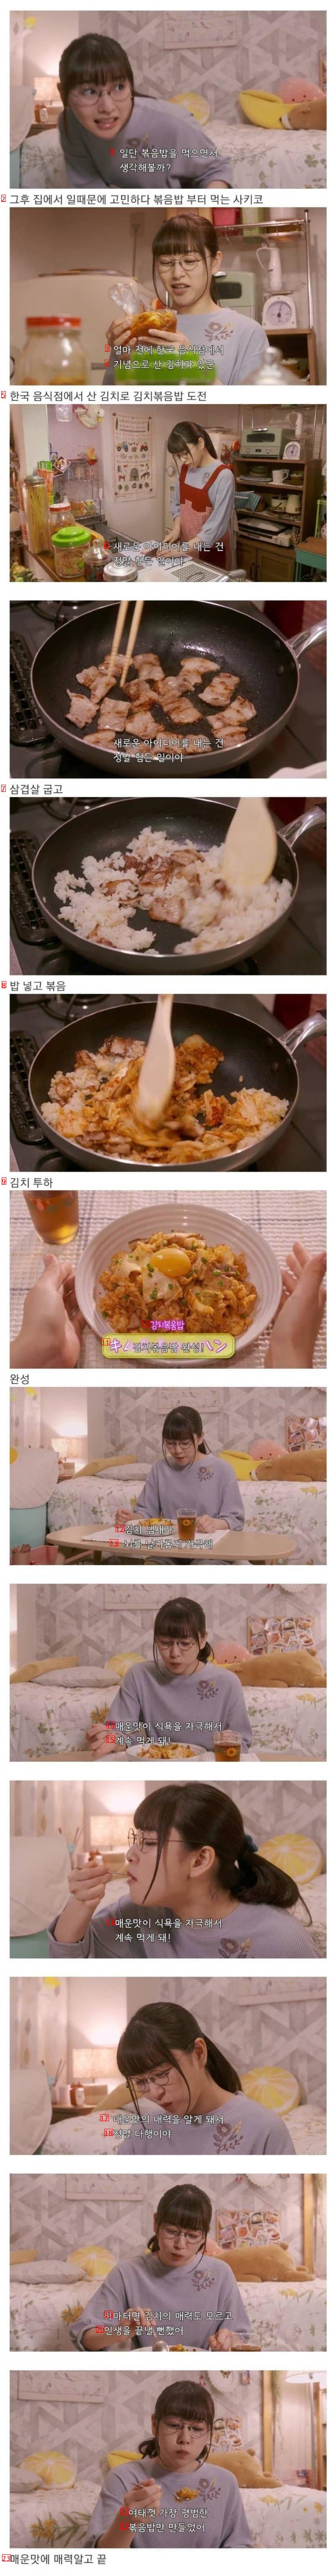 日本ドラマの中の韓国料理